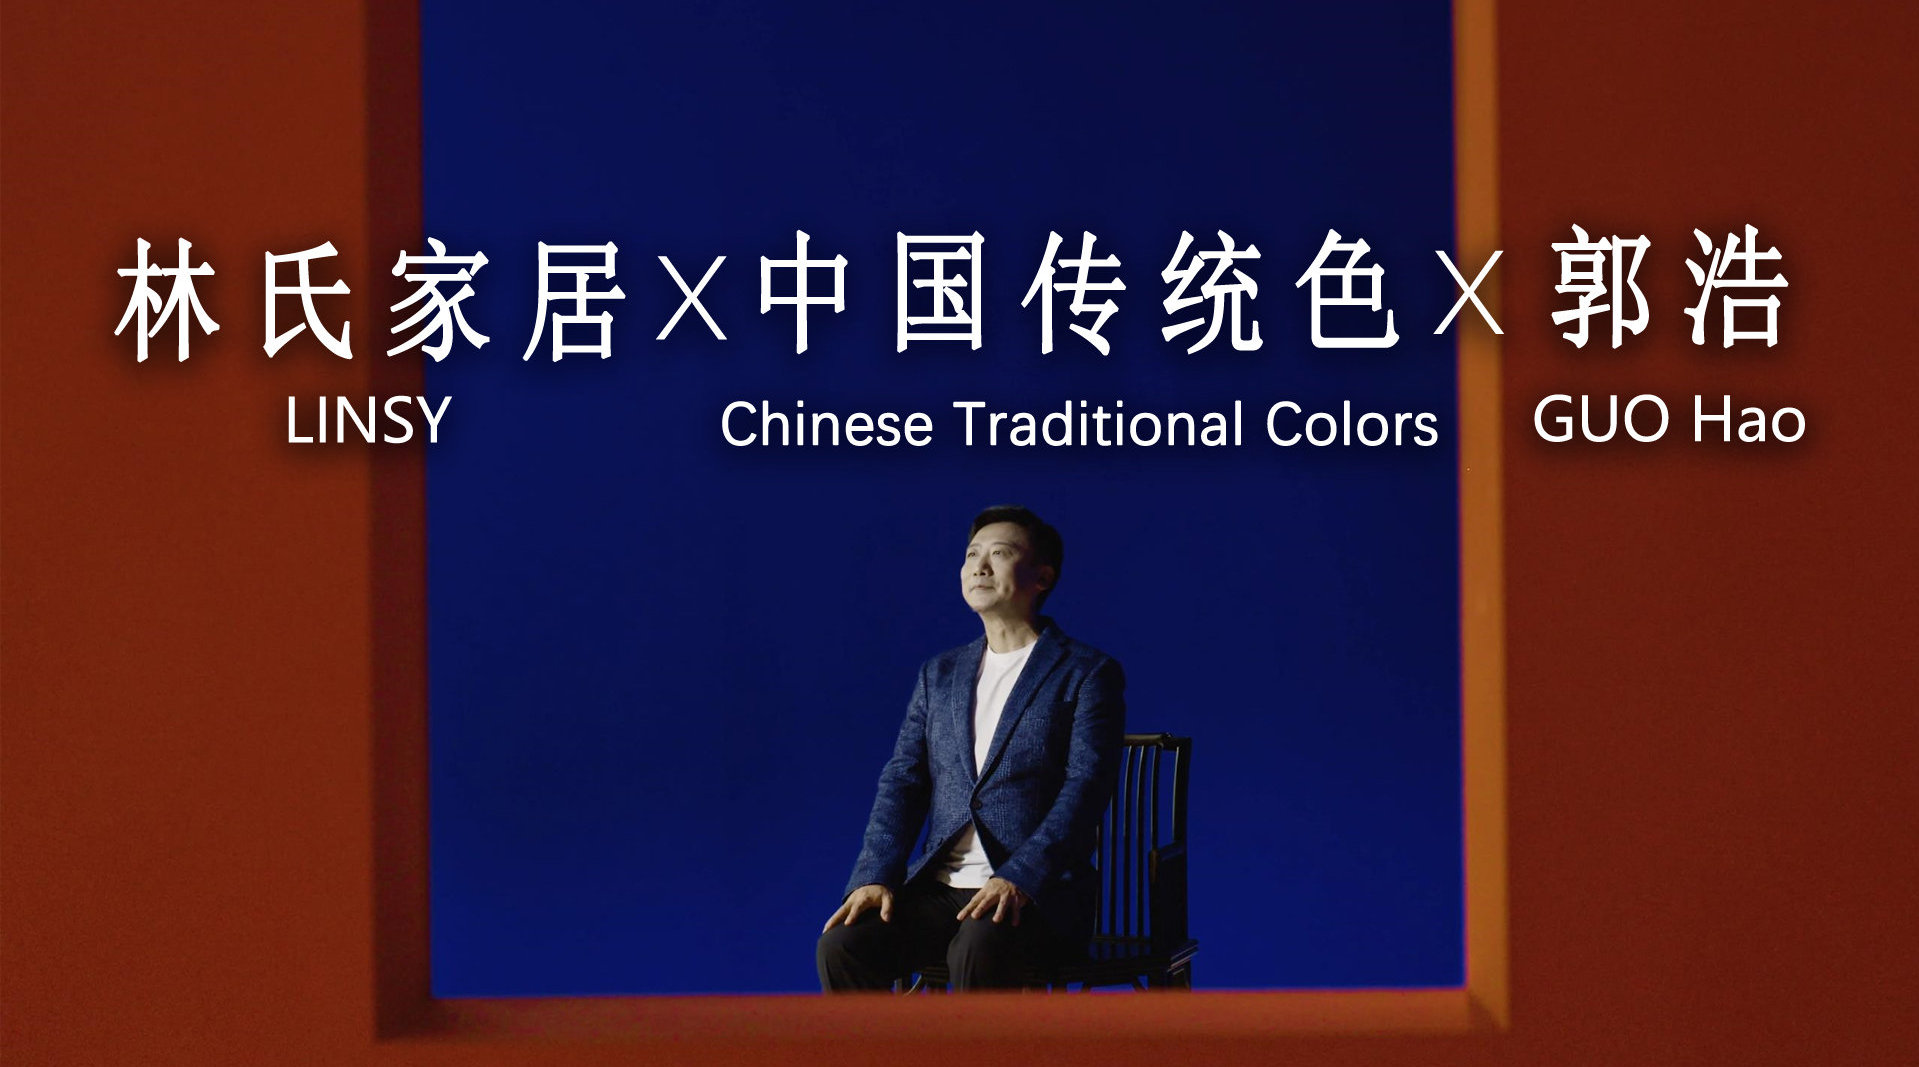 林氏家居让中国传统色回到日常生活